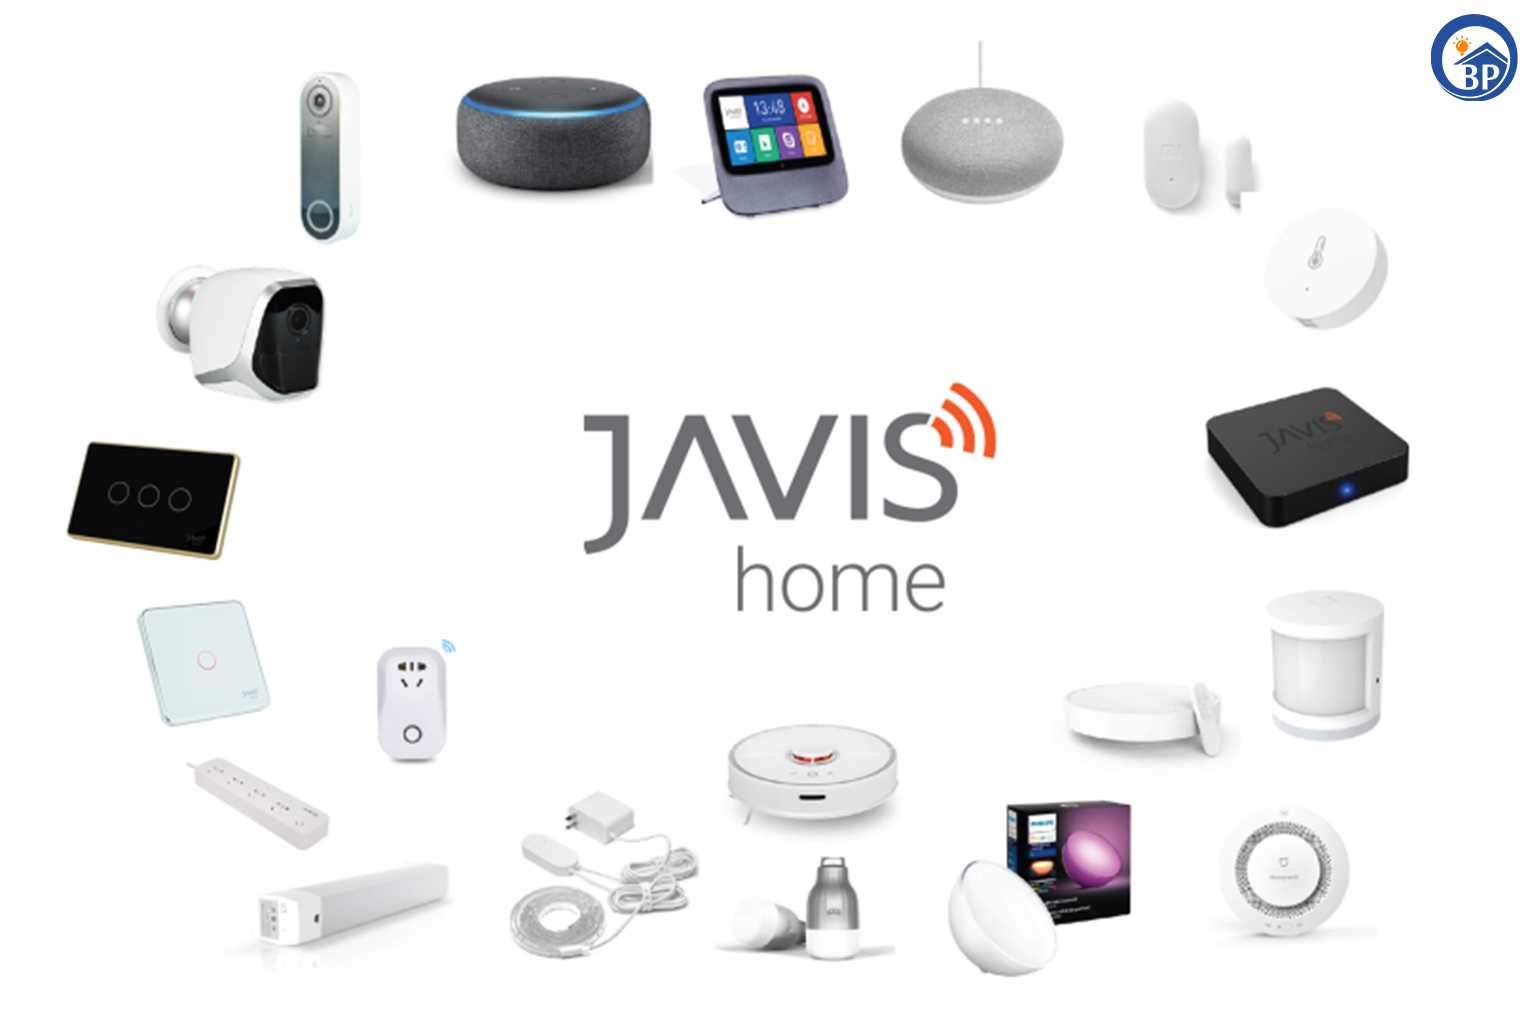 Nhà thông minh Javis là một trong những sản phẩm tiên tiến và hiện đại nhất hiện nay. Với các tính năng thông minh và sự tối ưu hóa tối đa cho cuộc sống của người dùng, Javis sẽ giúp bạn tiết kiệm thời gian và năng lượng. Nhấn vào hình ảnh để khám phá những ưu điểm đắt giá của nhà thông minh Javis.